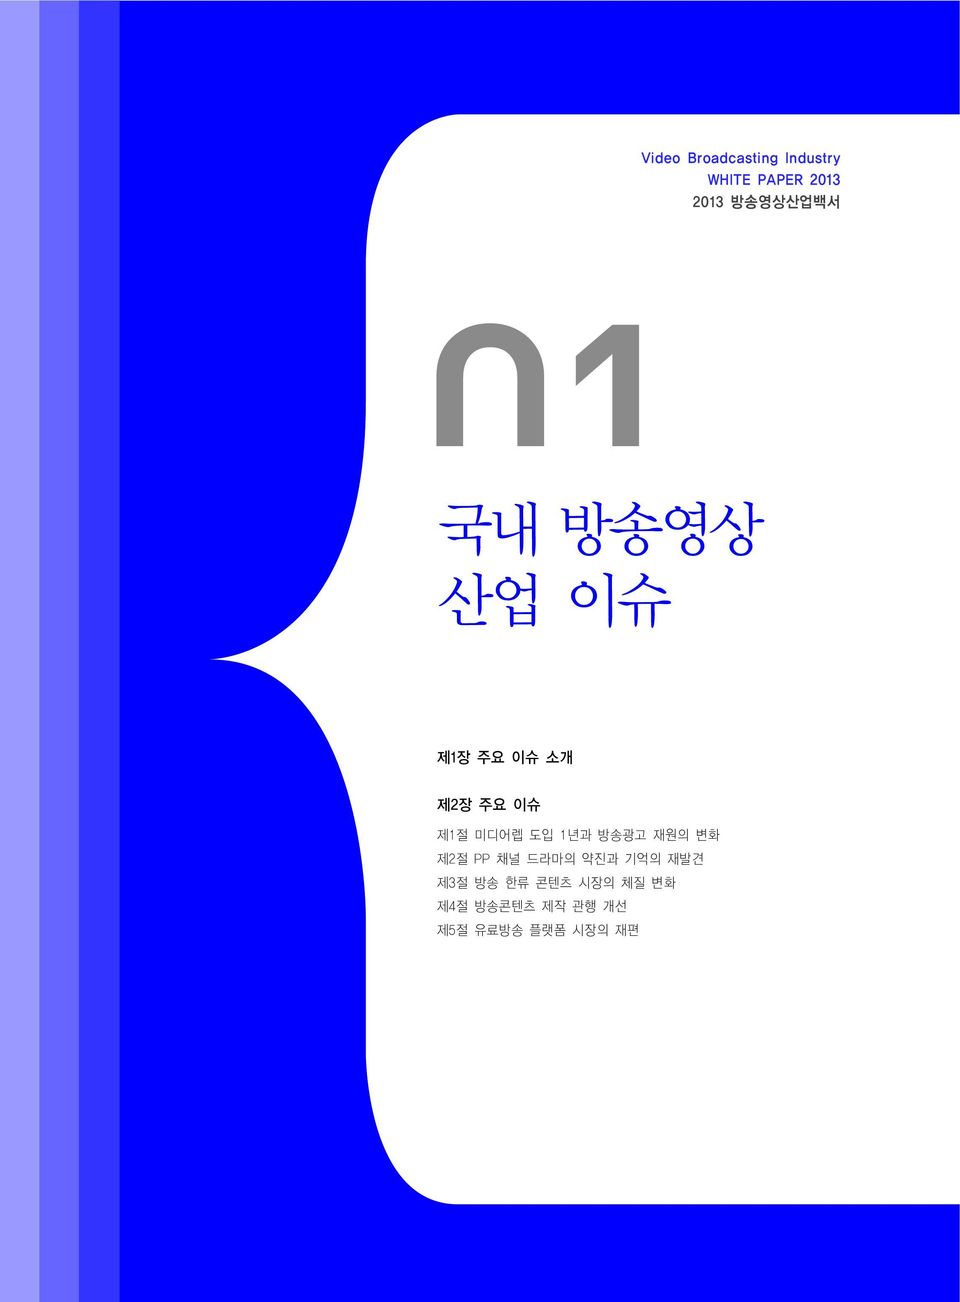 미디어렙 도입 1년과 방송광고 재원의 변화 제2절 PP 채널 드라마의 약진과 기억의 재발견